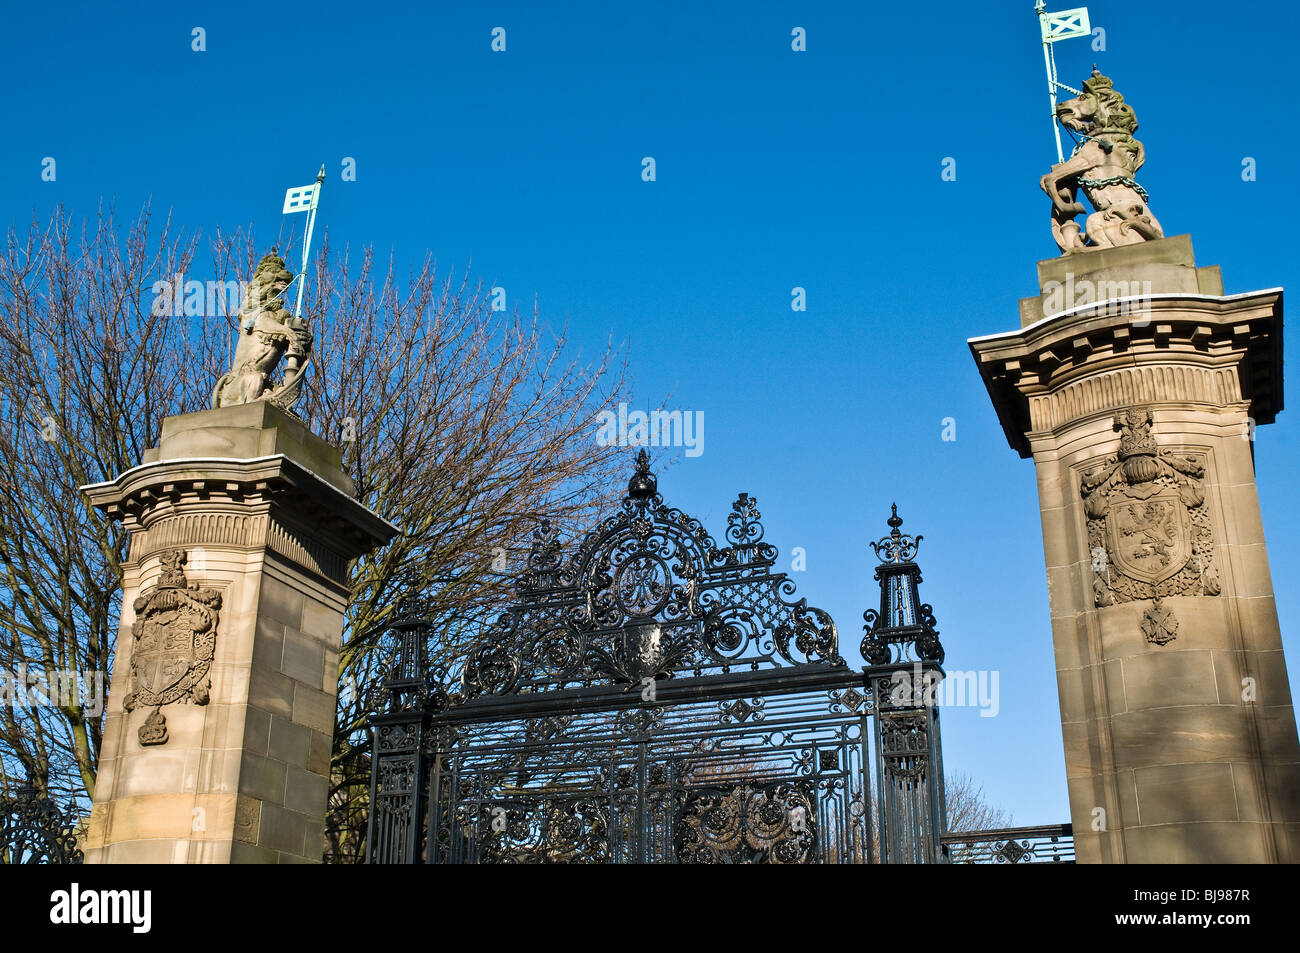 dh HOLYROOD PALACE EDINBURGH Schottland Palast Tore Einhorn Dekoration gearbeitet Eisernes Tor Stockfoto